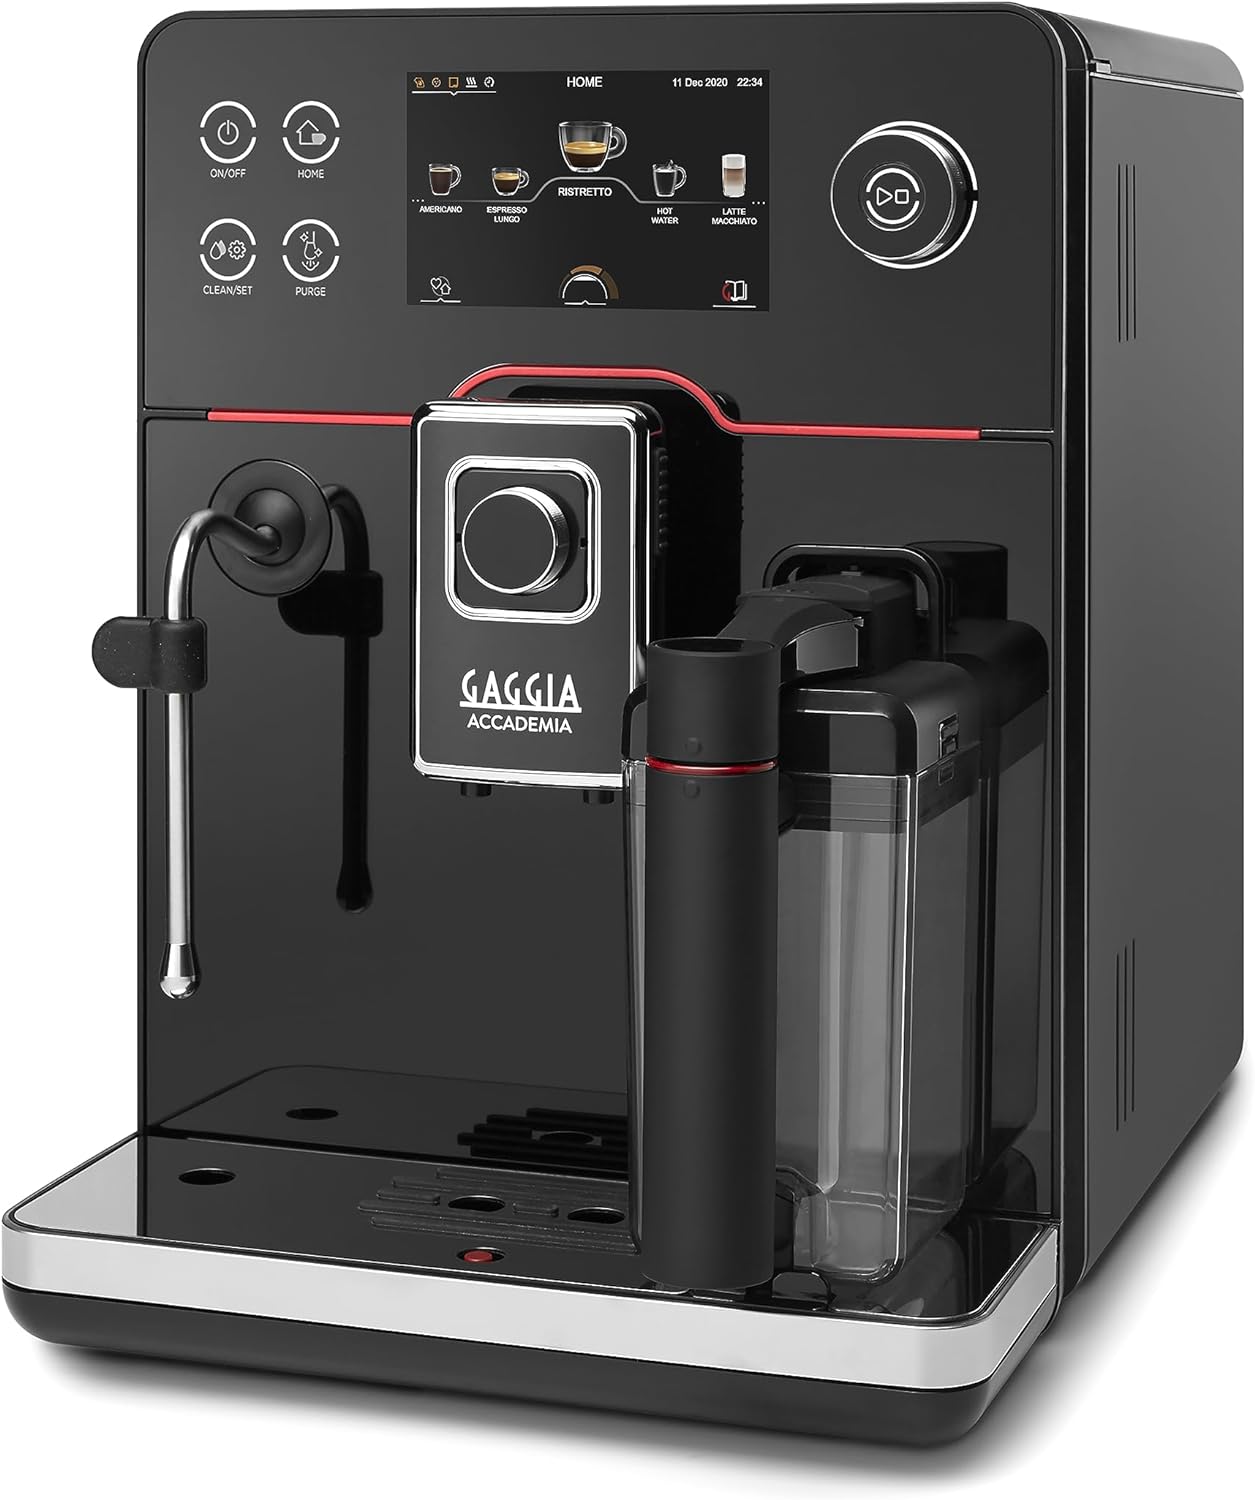 Gaggia Accademia Espresso Machine Review